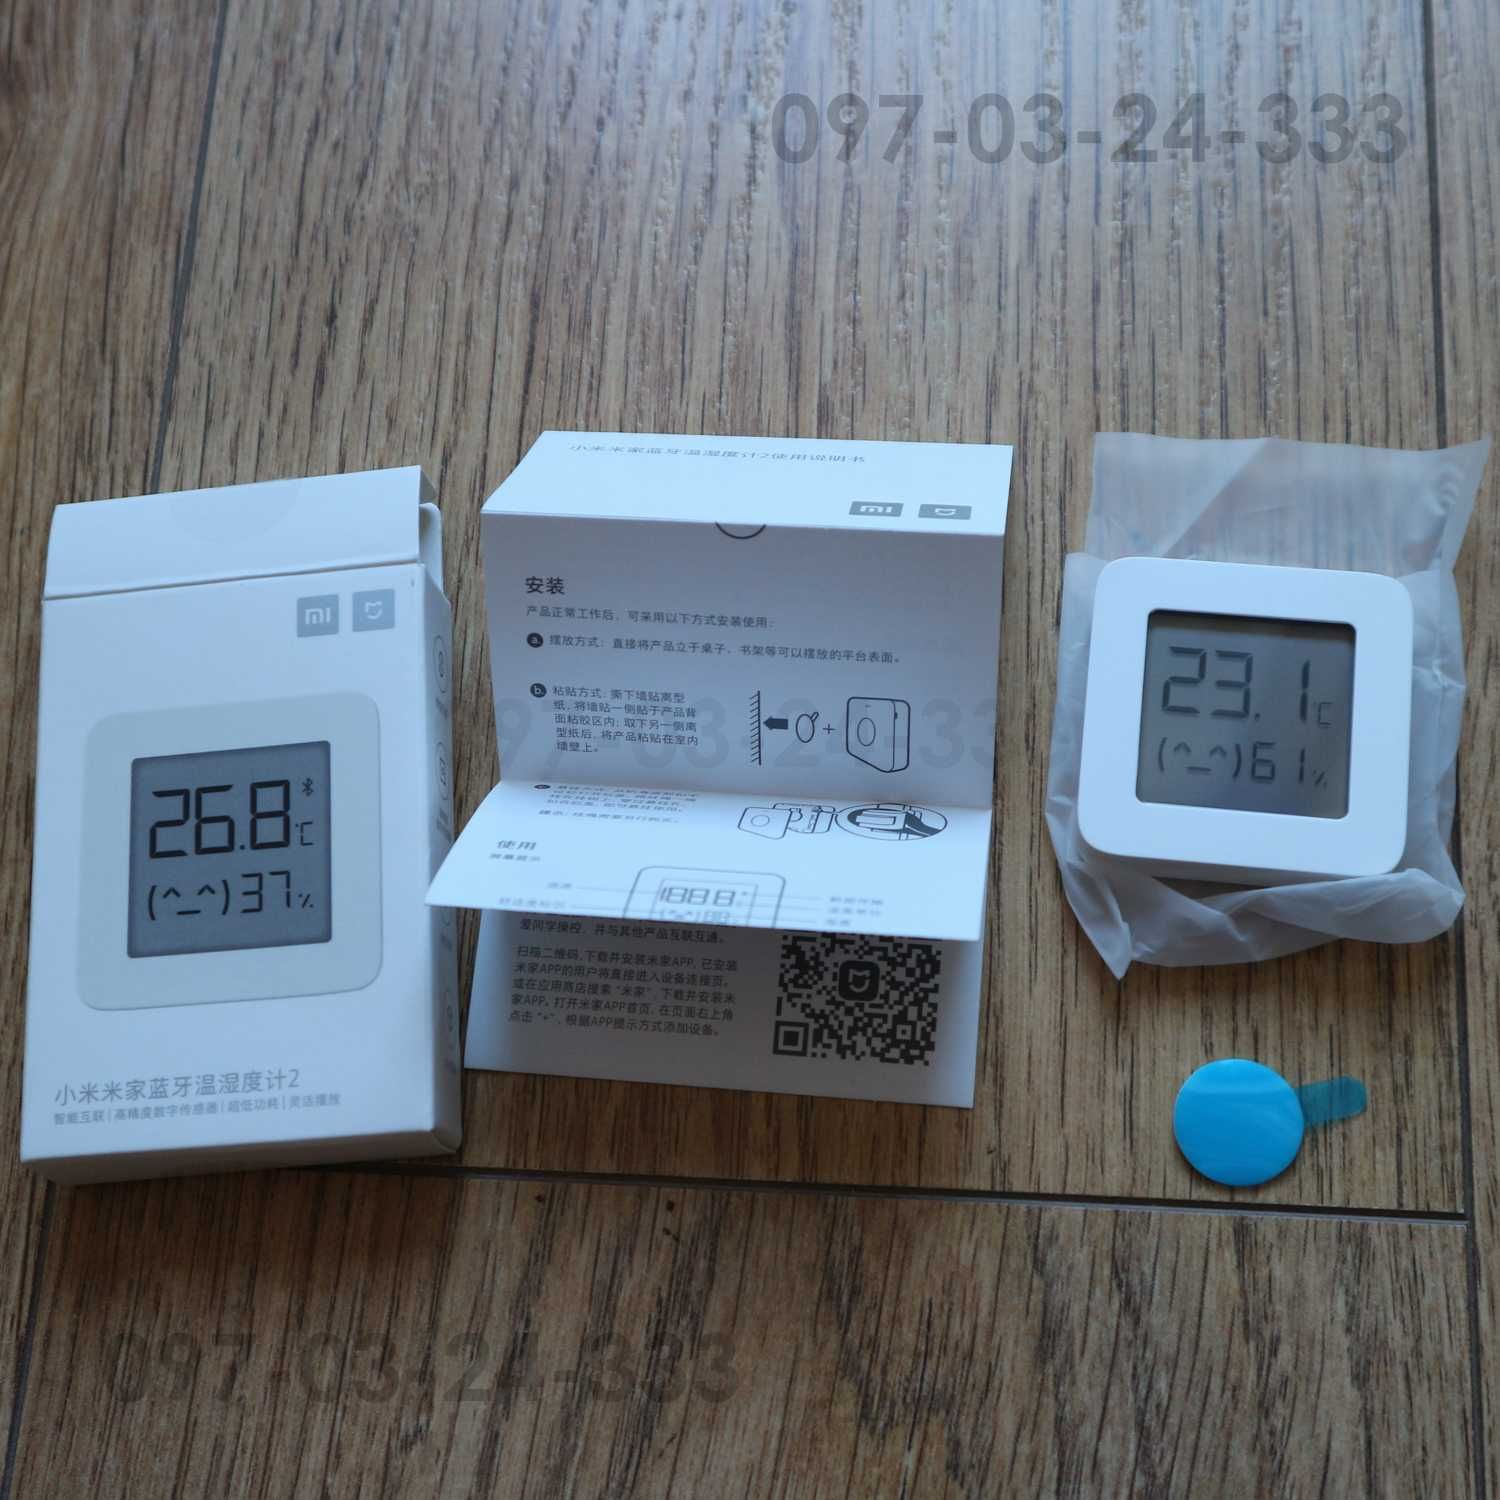 Bluetooth датчик температури і вологості термометр Xiaomi LYWSD03MMC